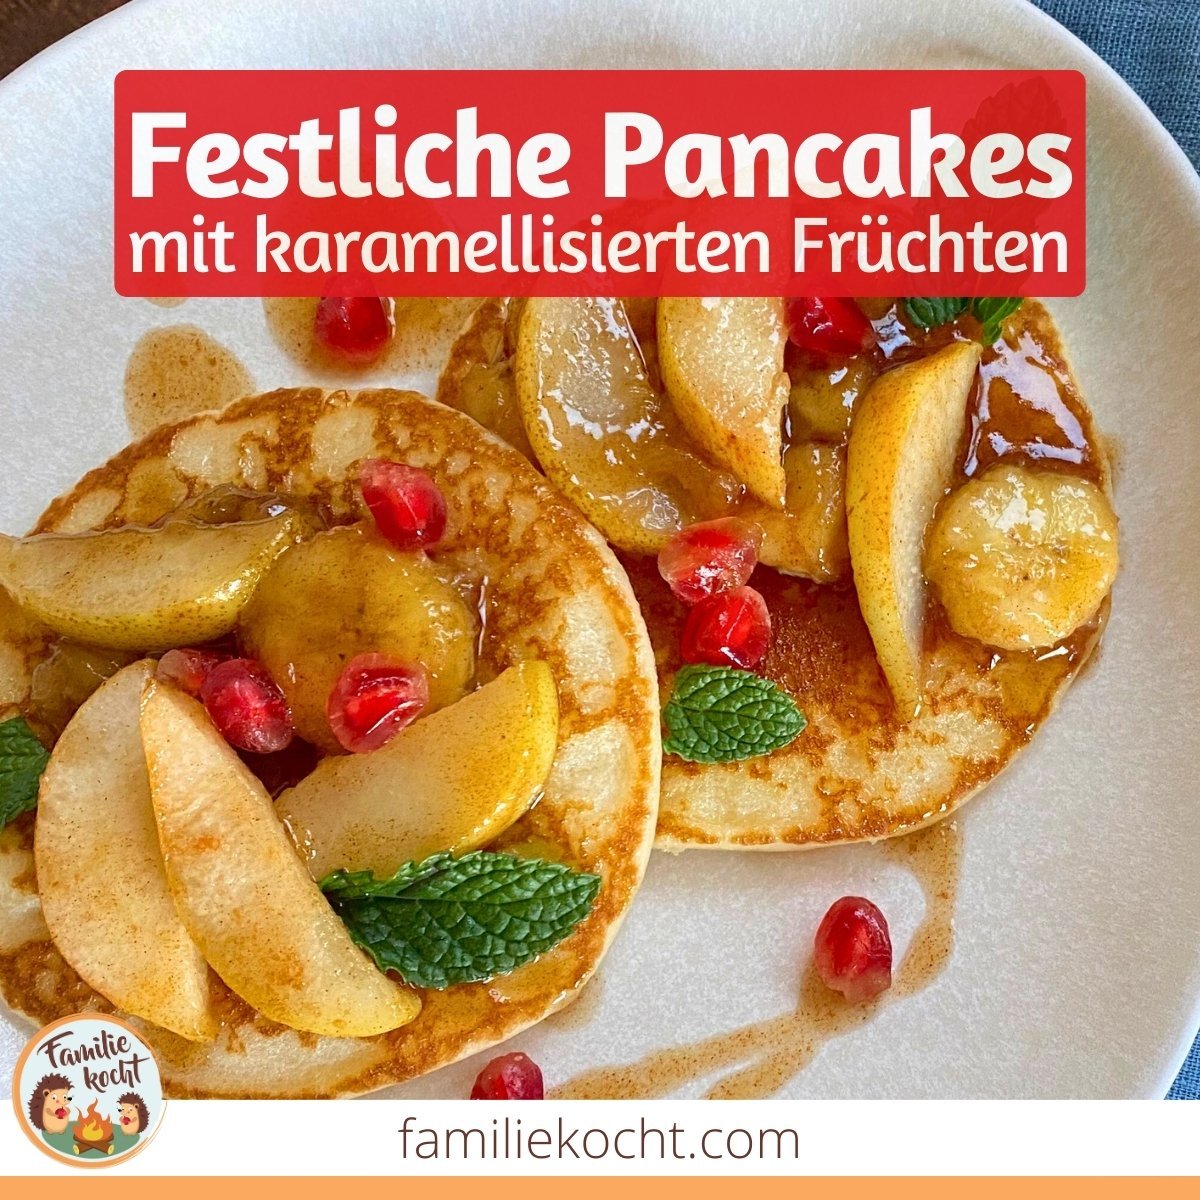 Pancakes mit karamellisierten Früchten